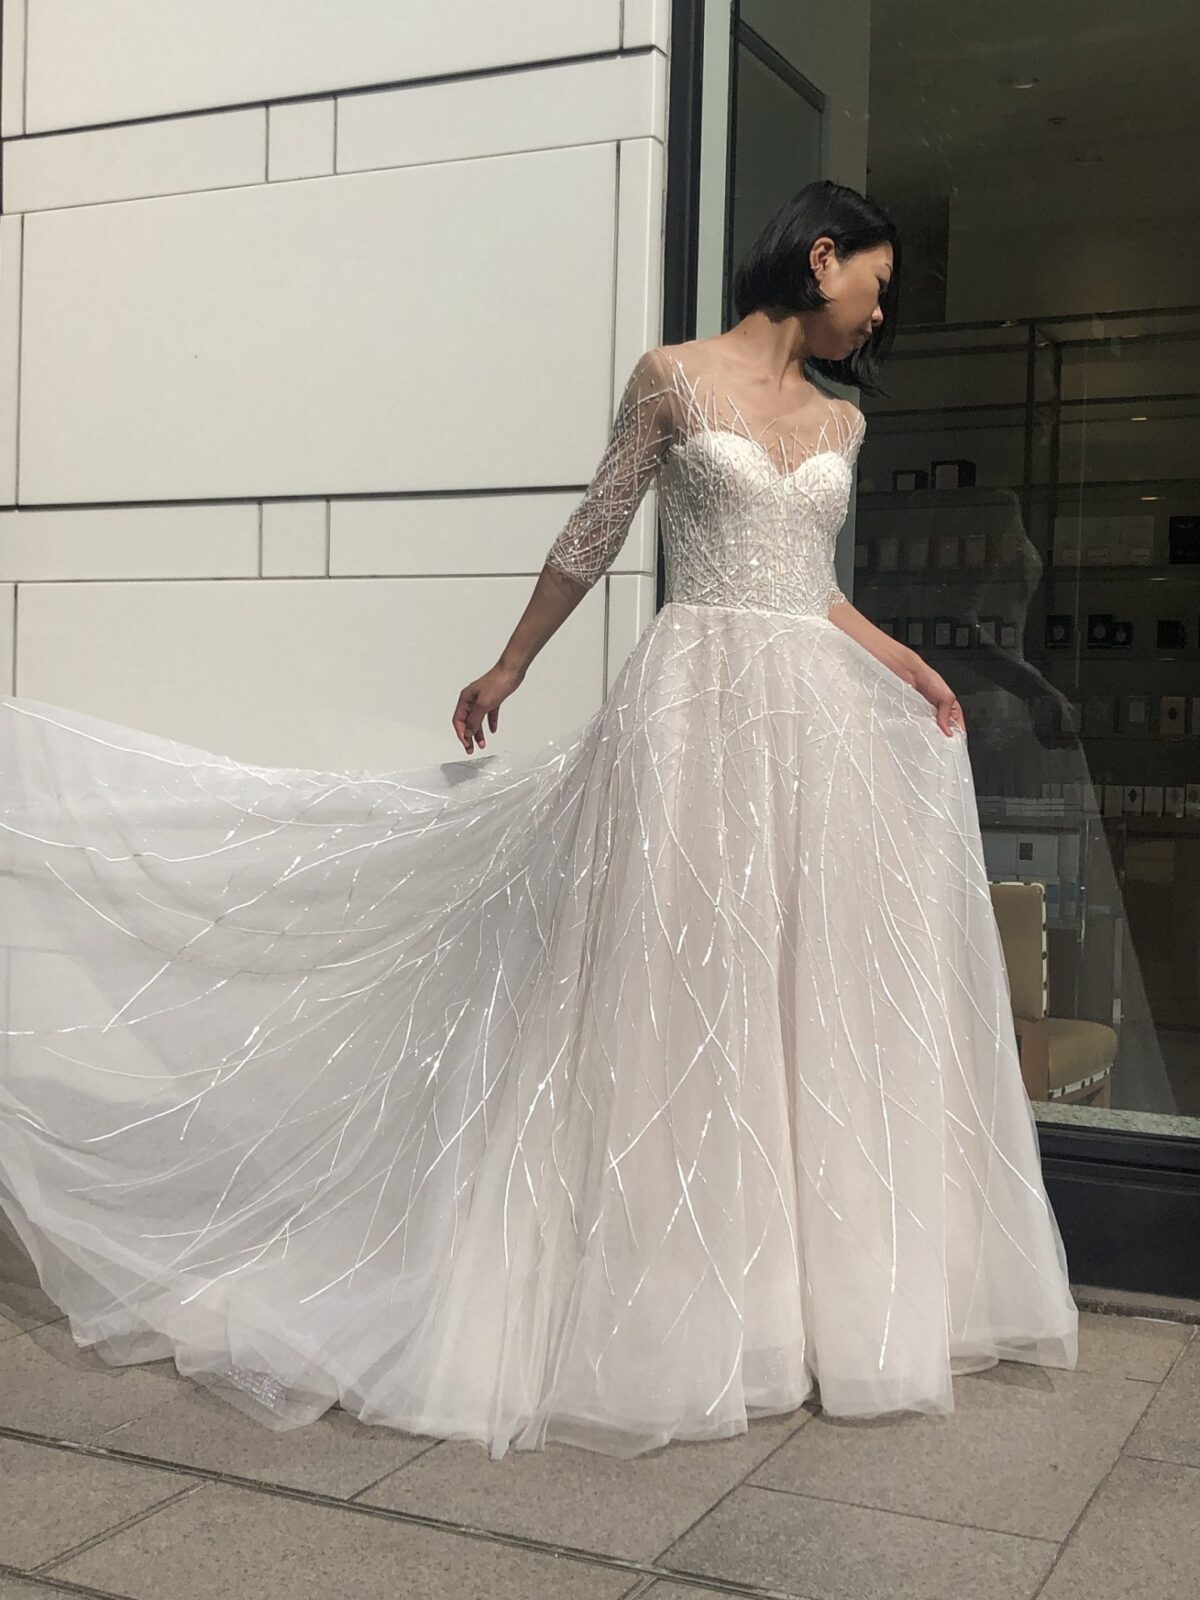 バーニーズニューヨーク横浜店で人気のレンタルウェディングドレスは直線状にビジューが施され、屋外では特にきらきらと美しく輝くハーフスリーブのAラインドレスです。